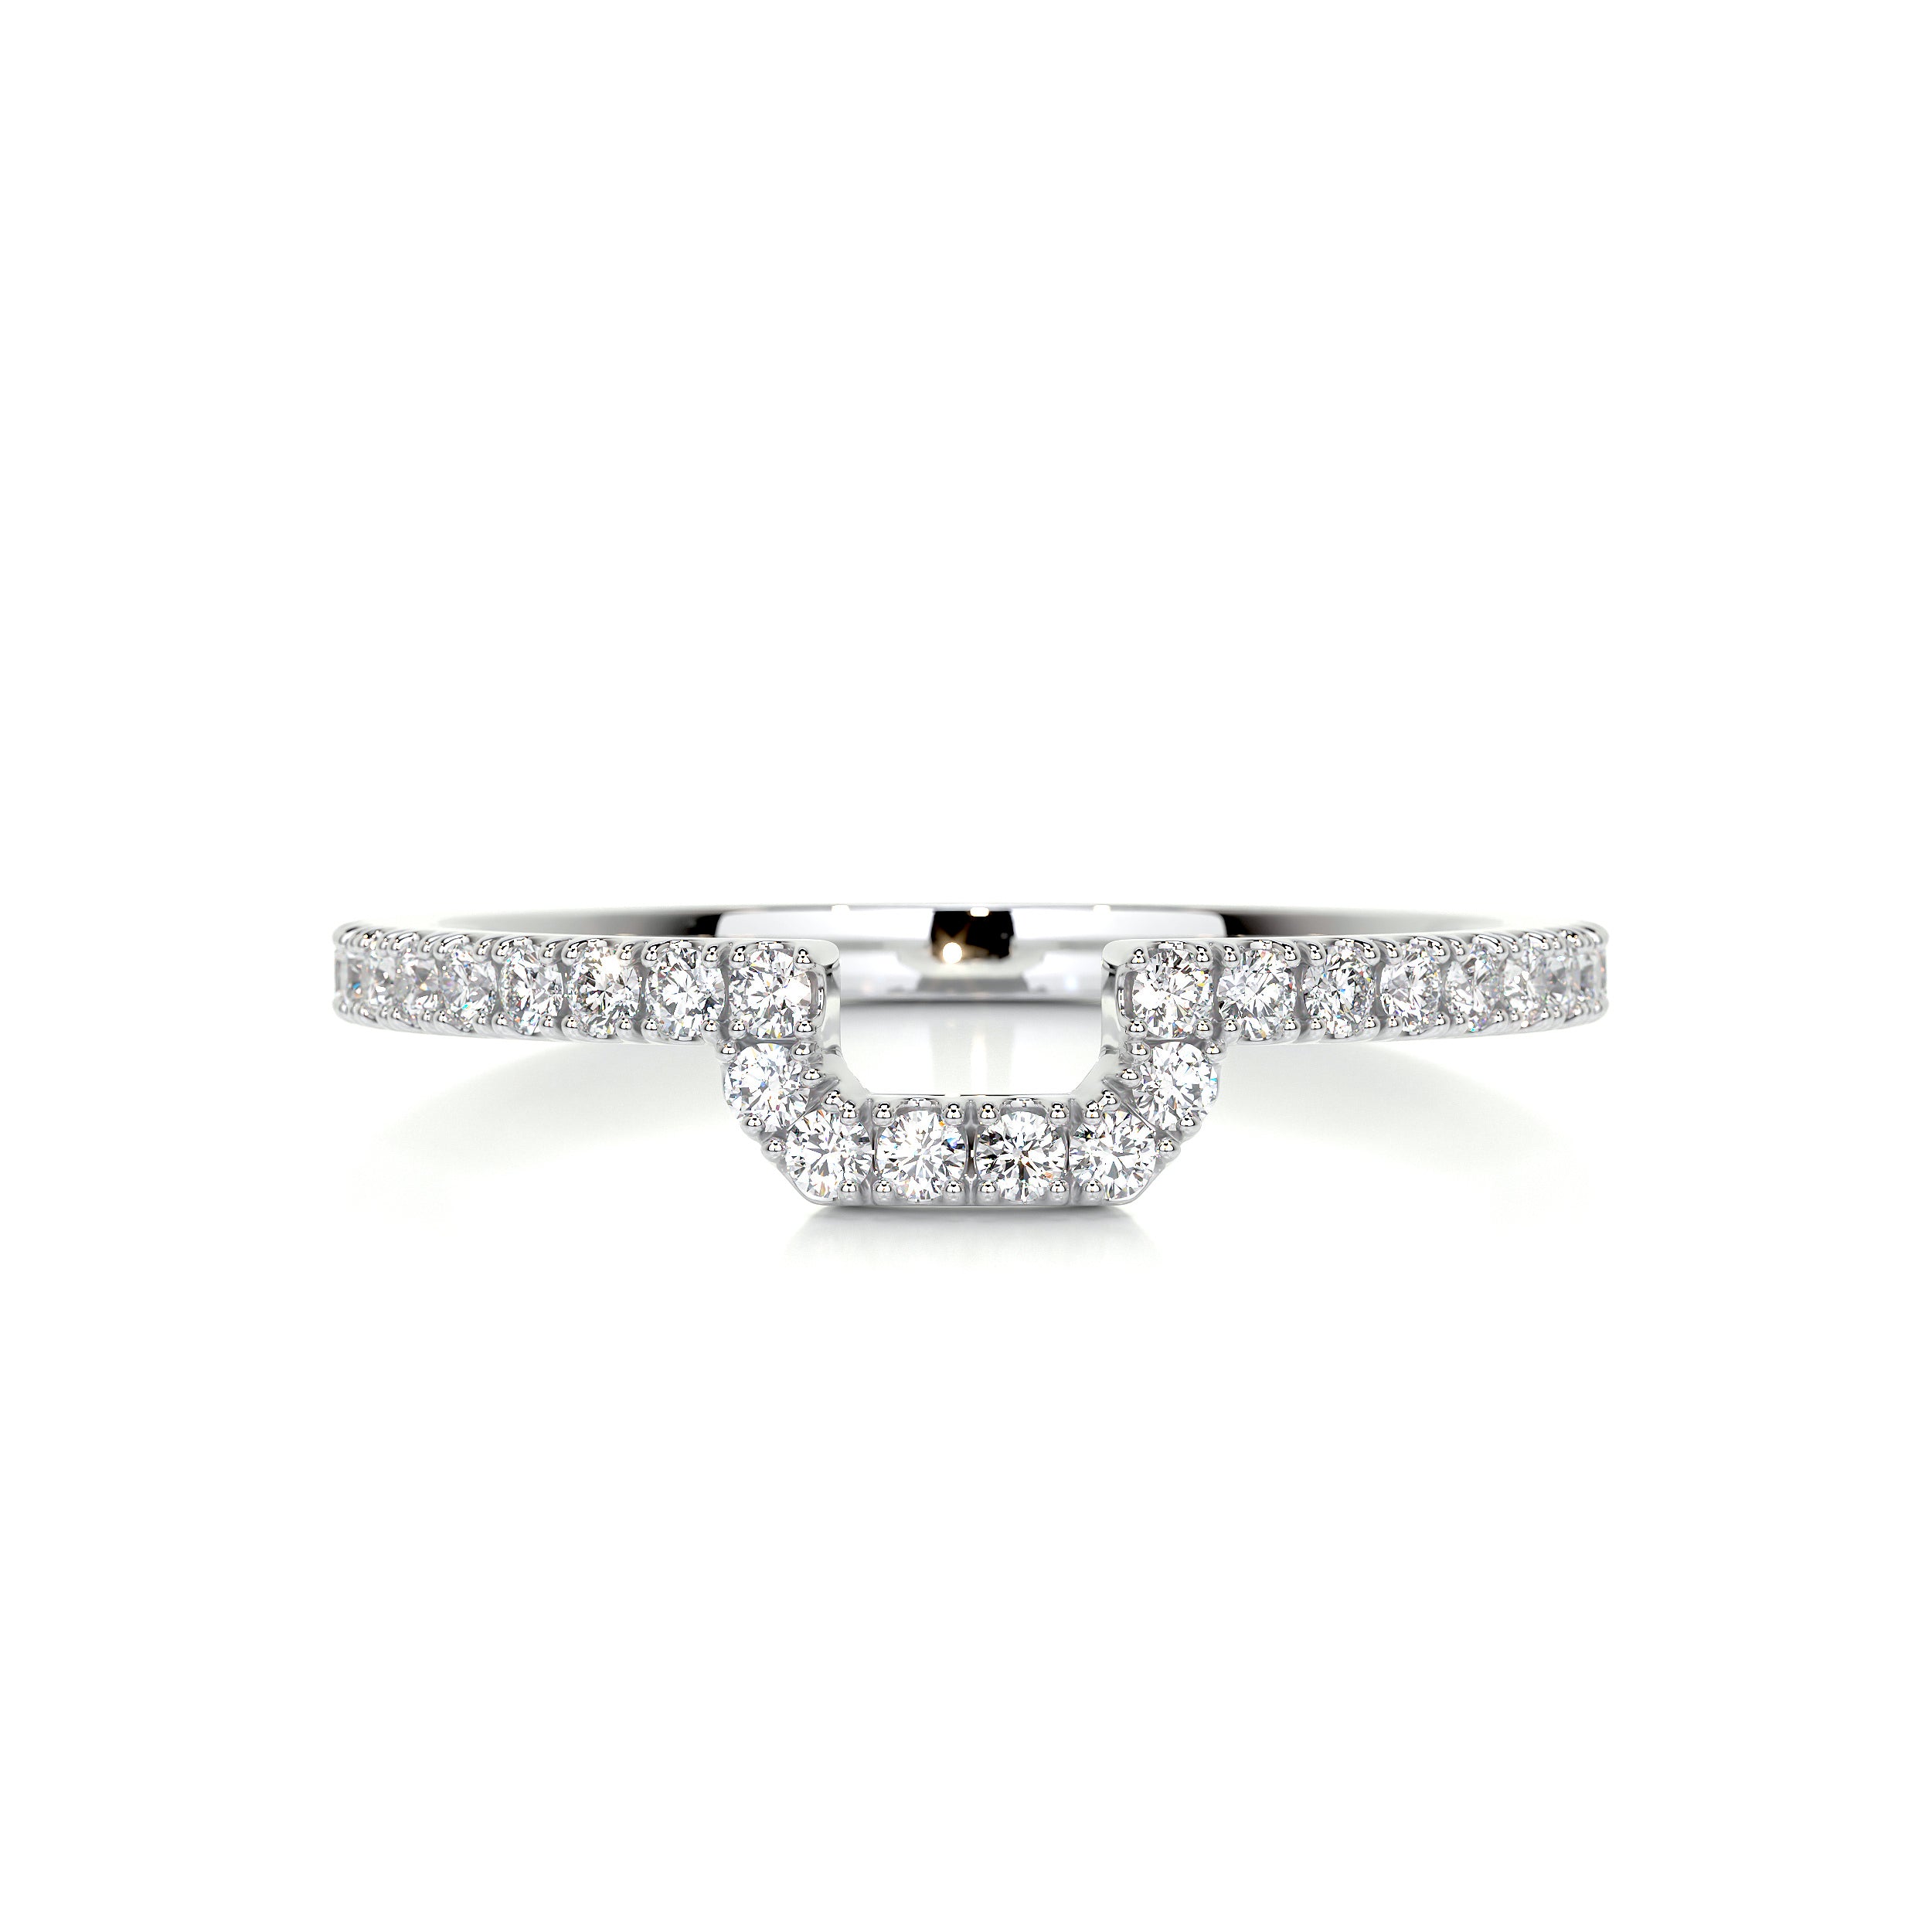 Luna Diamond Wedding Ring   (0.30 Carat) -14K White Gold